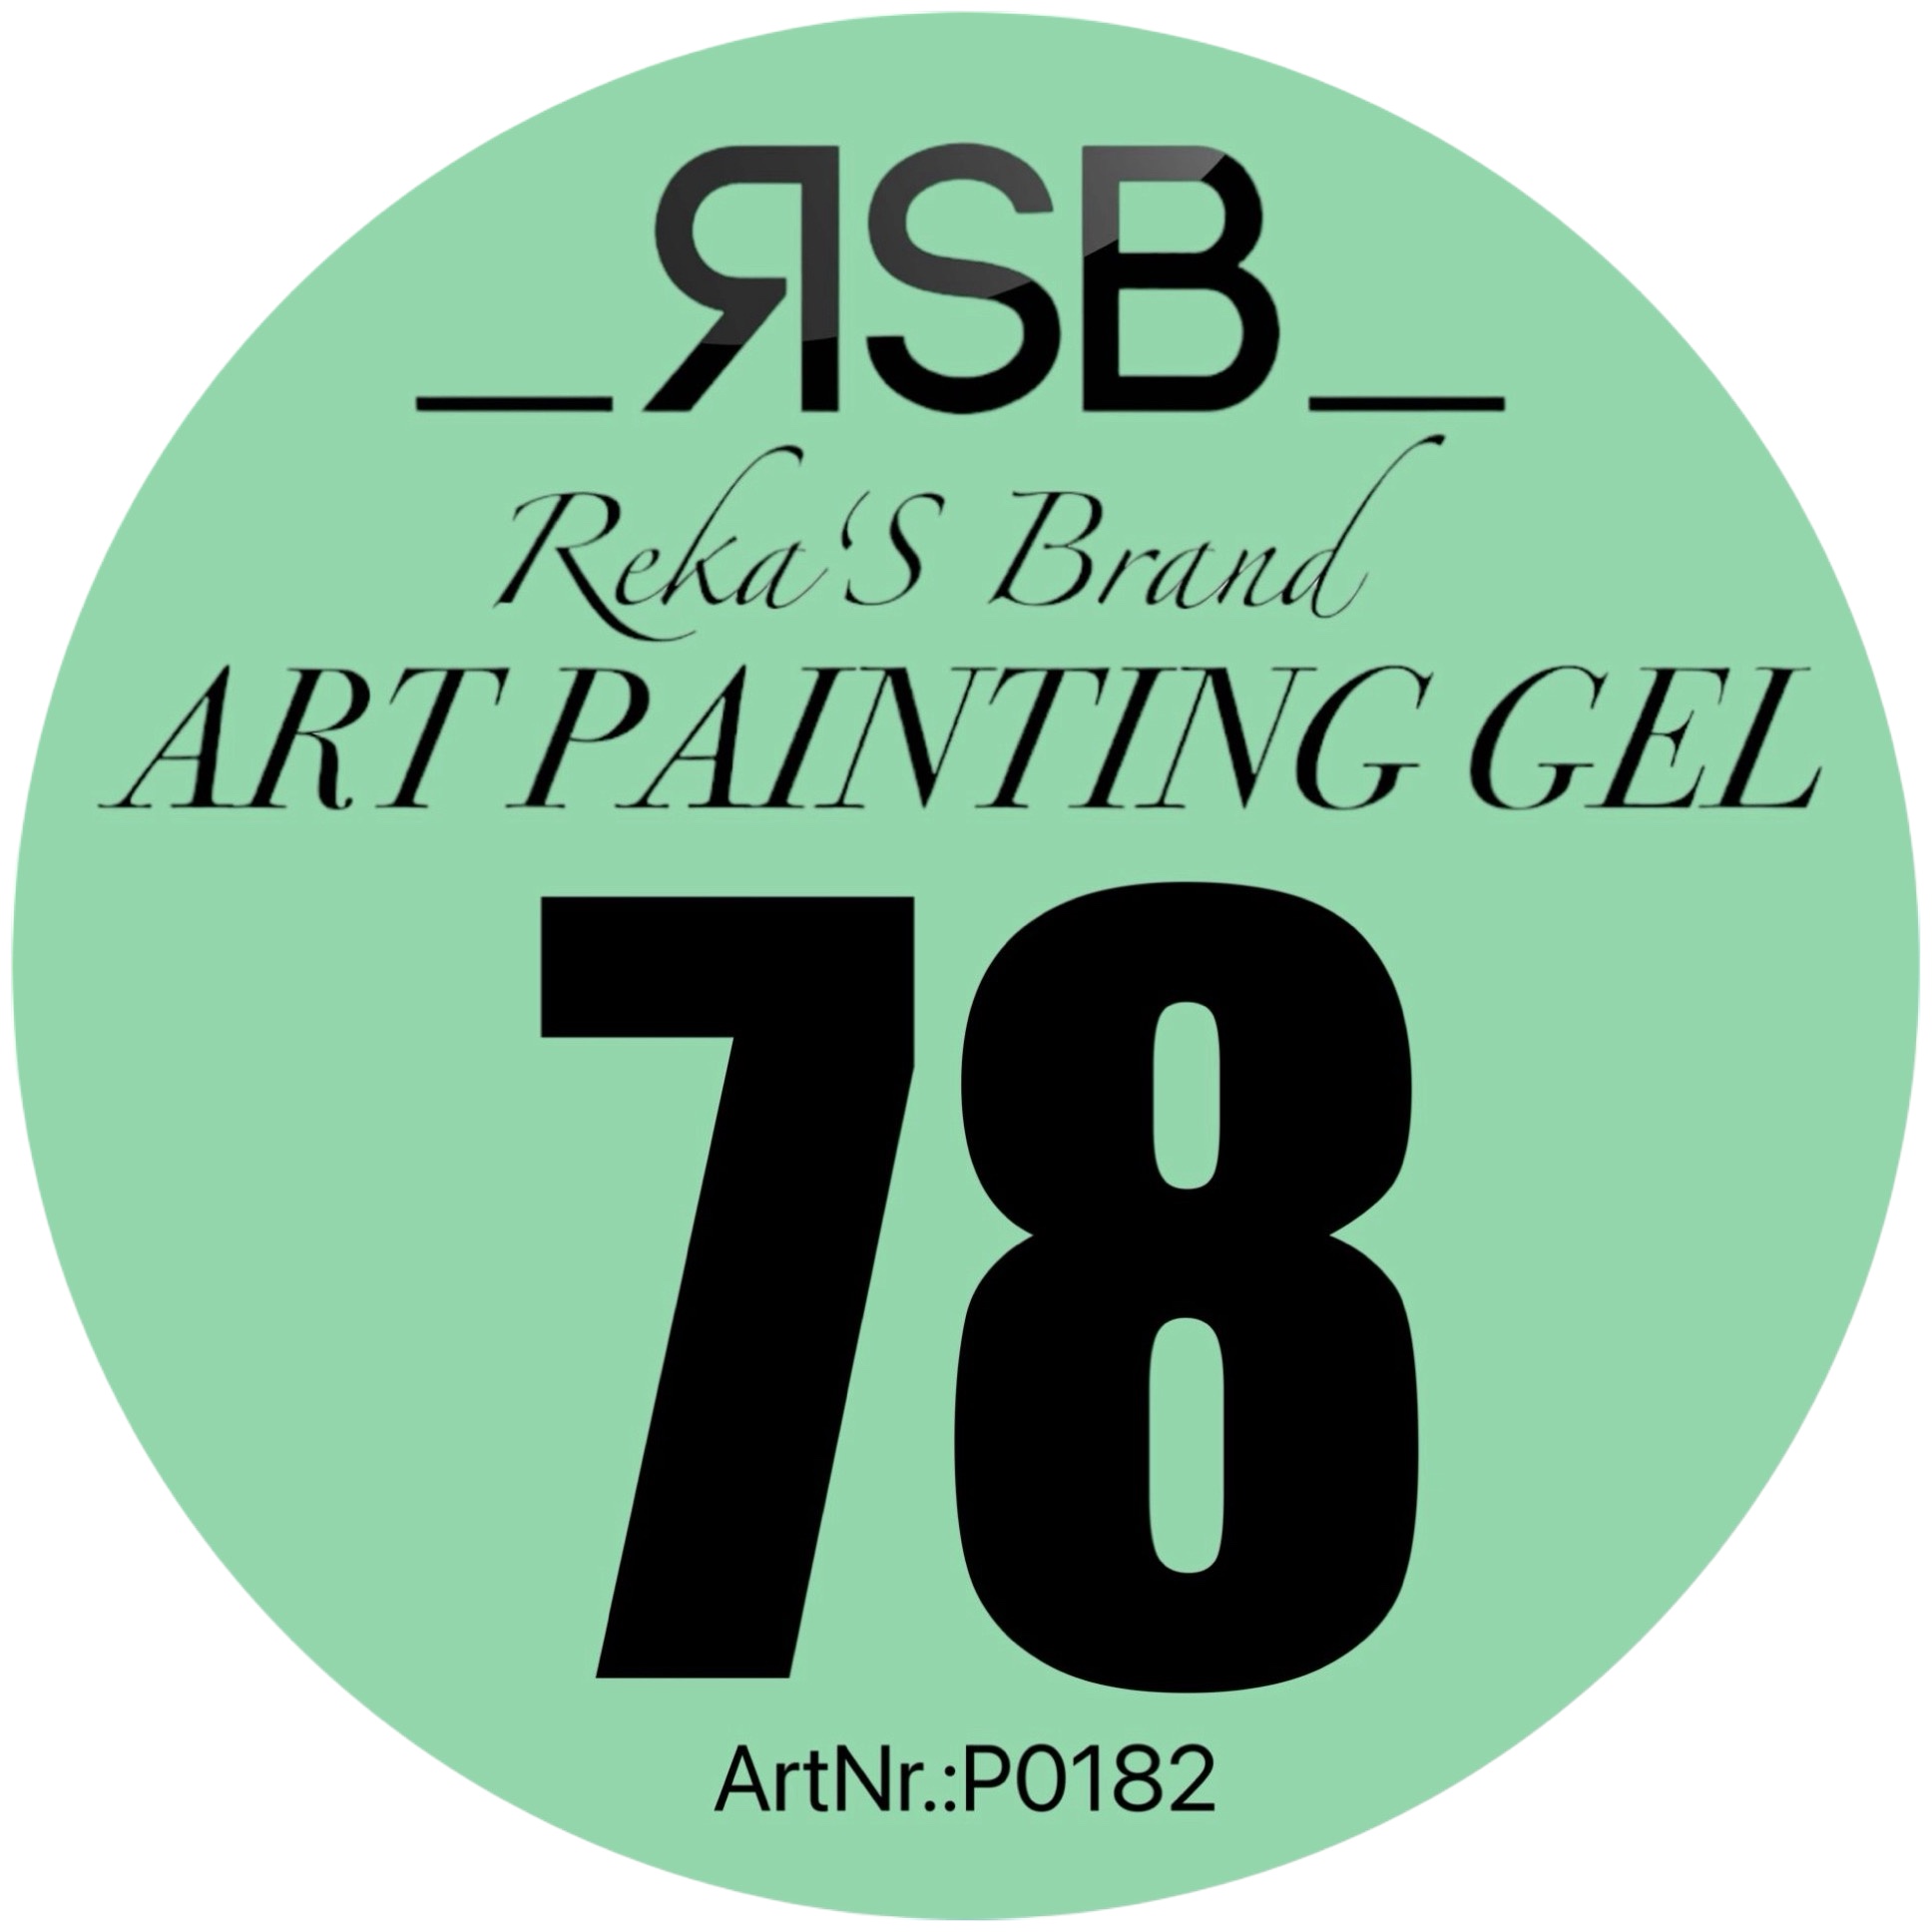 ART PAINTING GEL 78